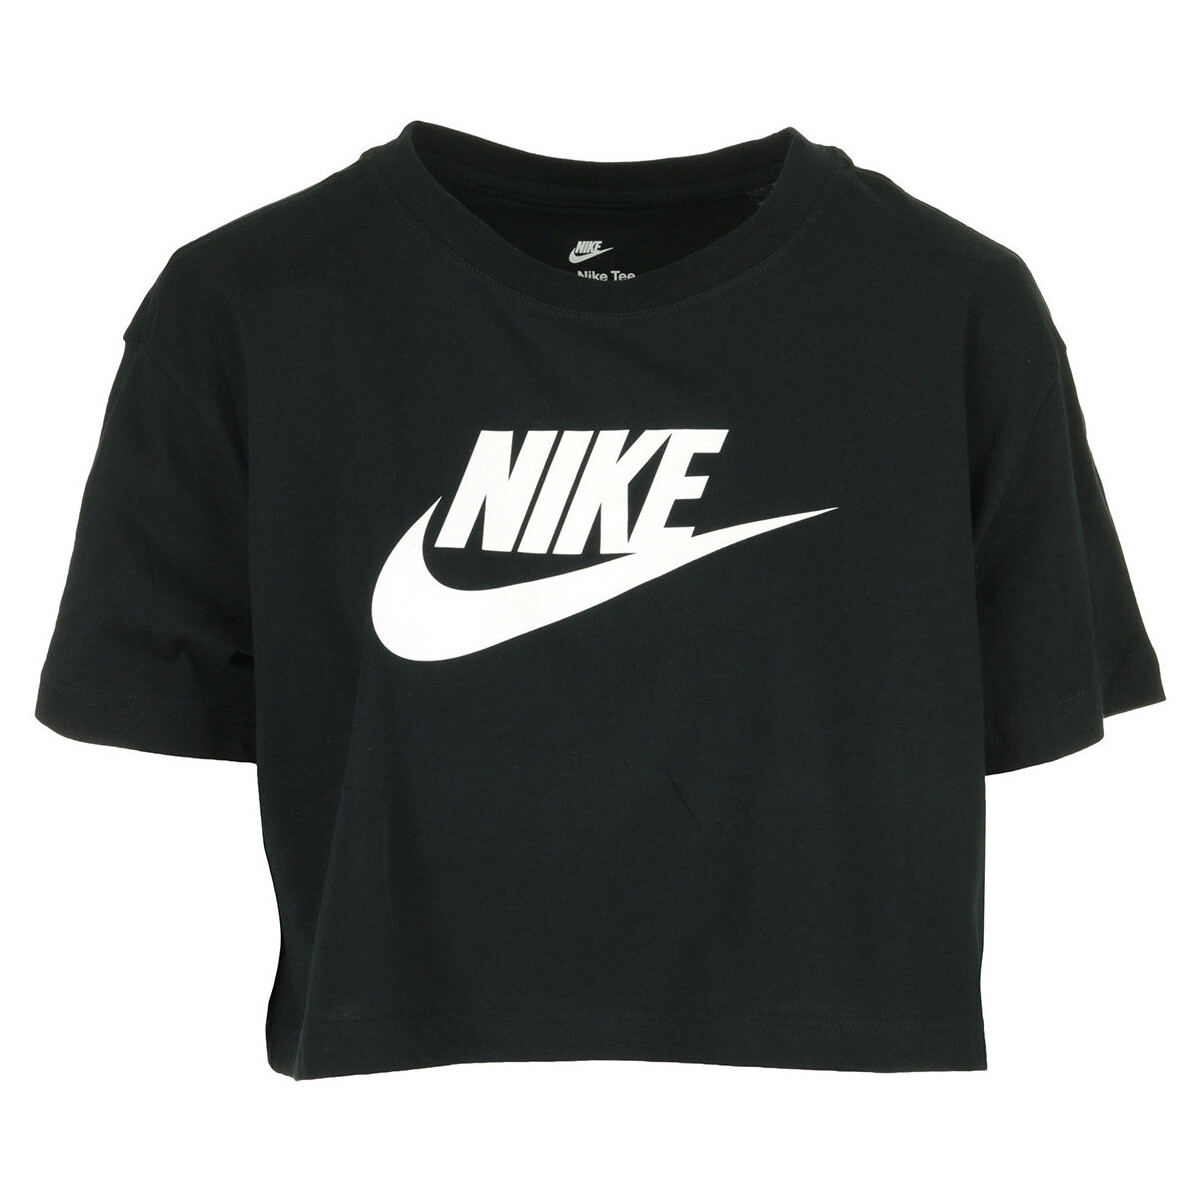 Vêtements Femme T-shirts manches courtes Nike Wms Nsw Tee Essential Crp Icn Ftr Noir